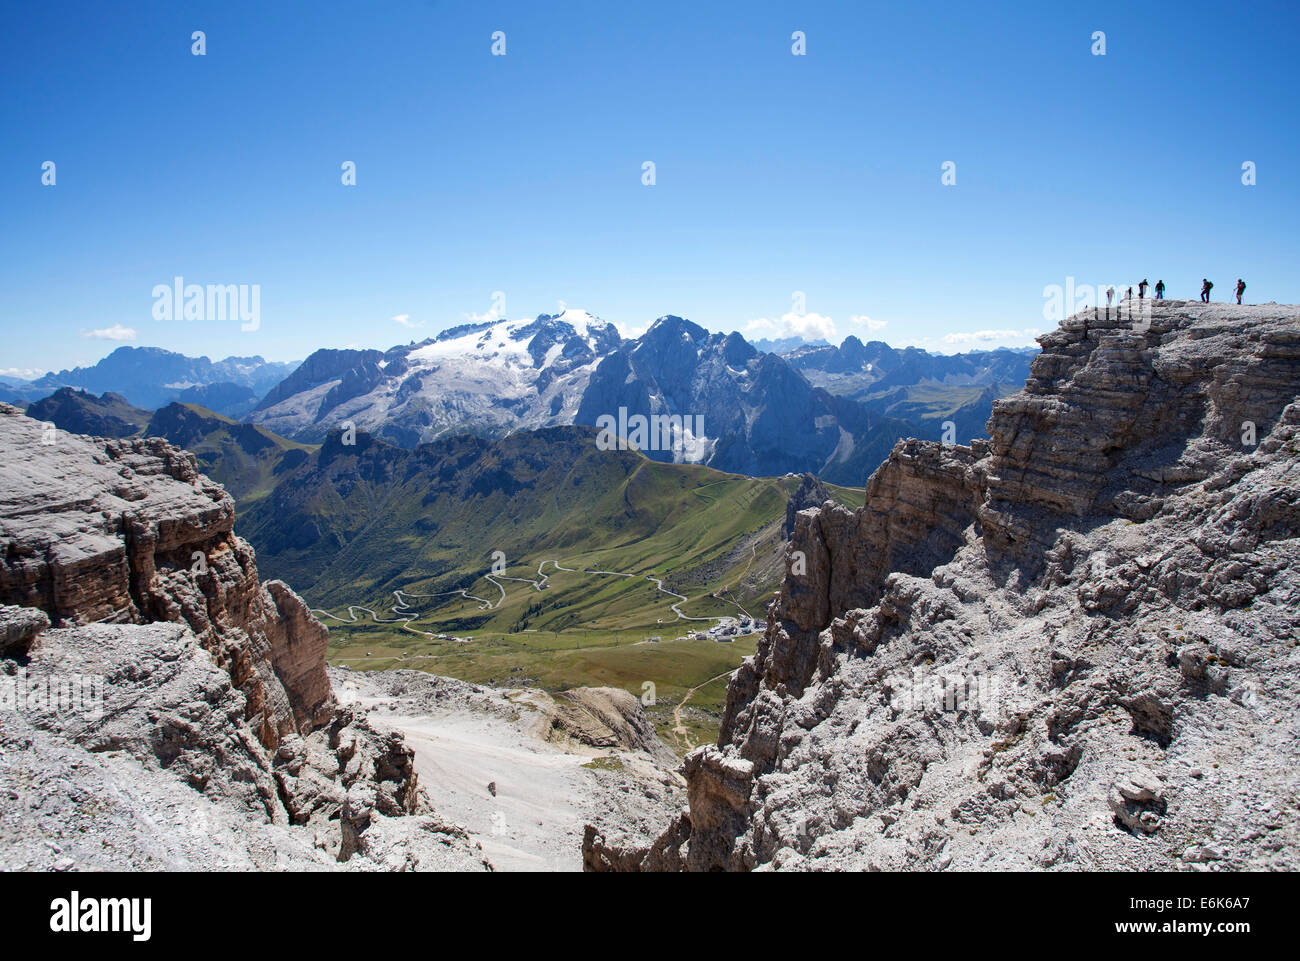 View towards Marmolada Glacier, Sass Pordoi Mountain, summit of Pordoi Pass, Sella Group, Dolomites, Trentino province, Italy Stock Photo